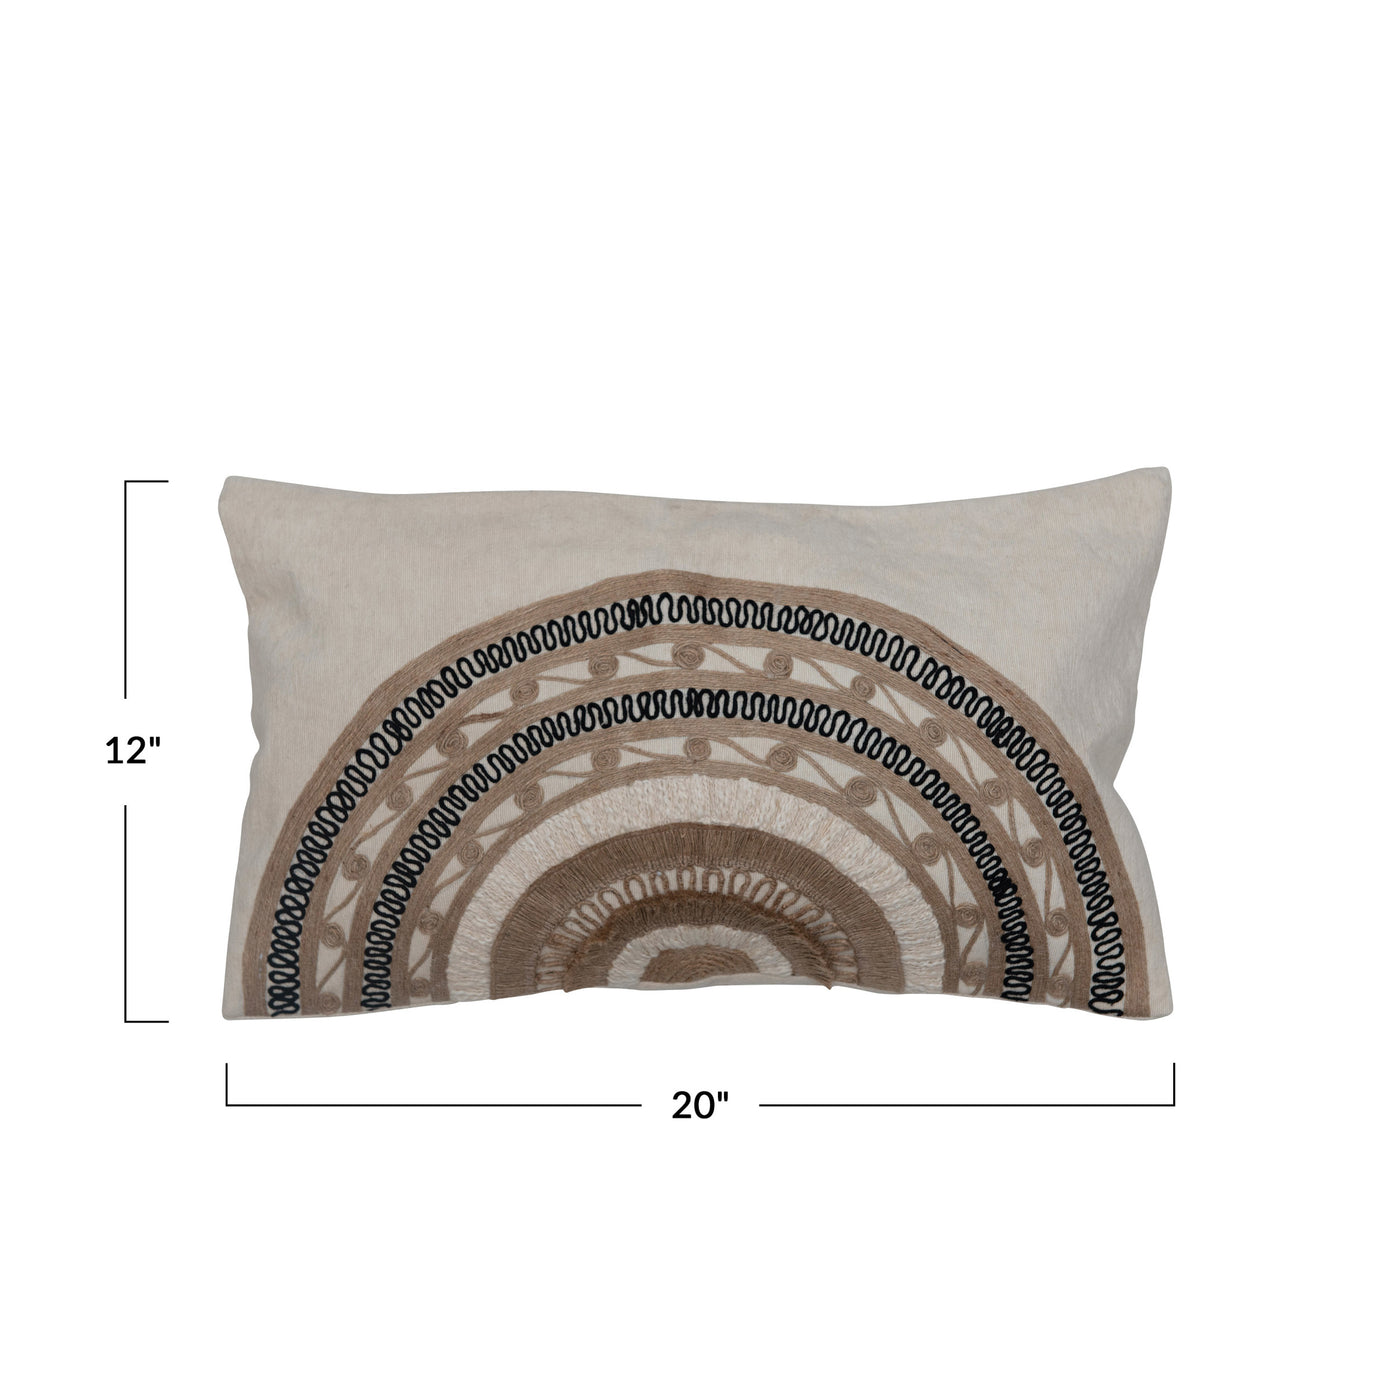 Embroidered Lumbar Pillow